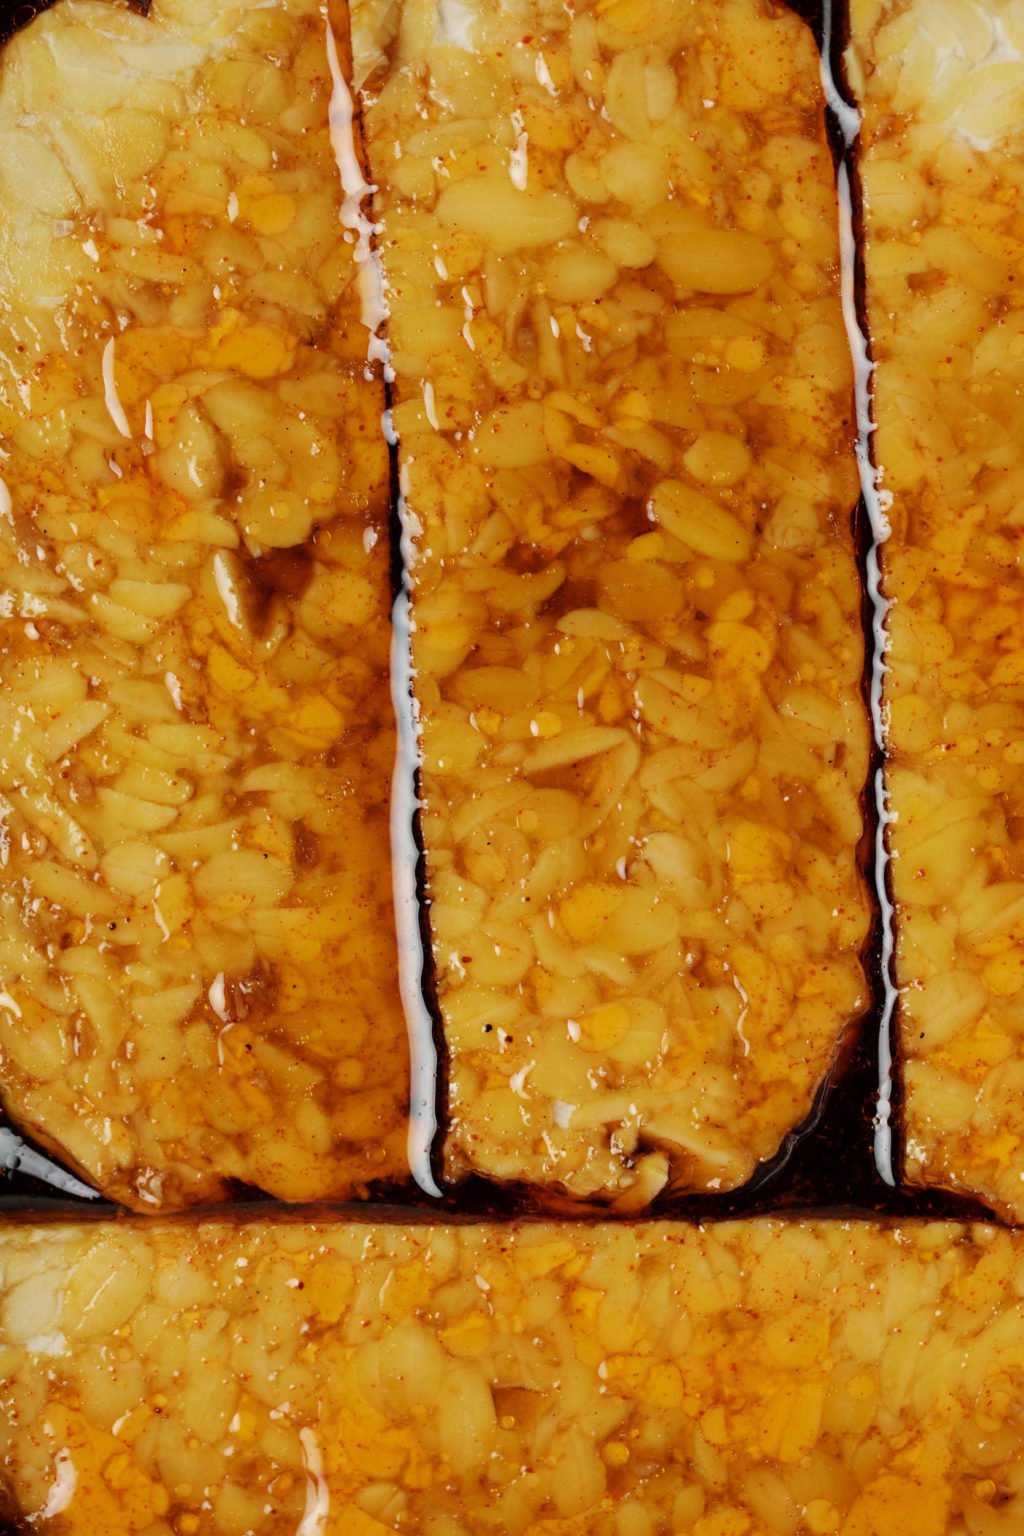 Close-up nga hulagway sa usa ka utanon nga protina nga gi-marinate sa usa ka dato nga amber nga sarsa.